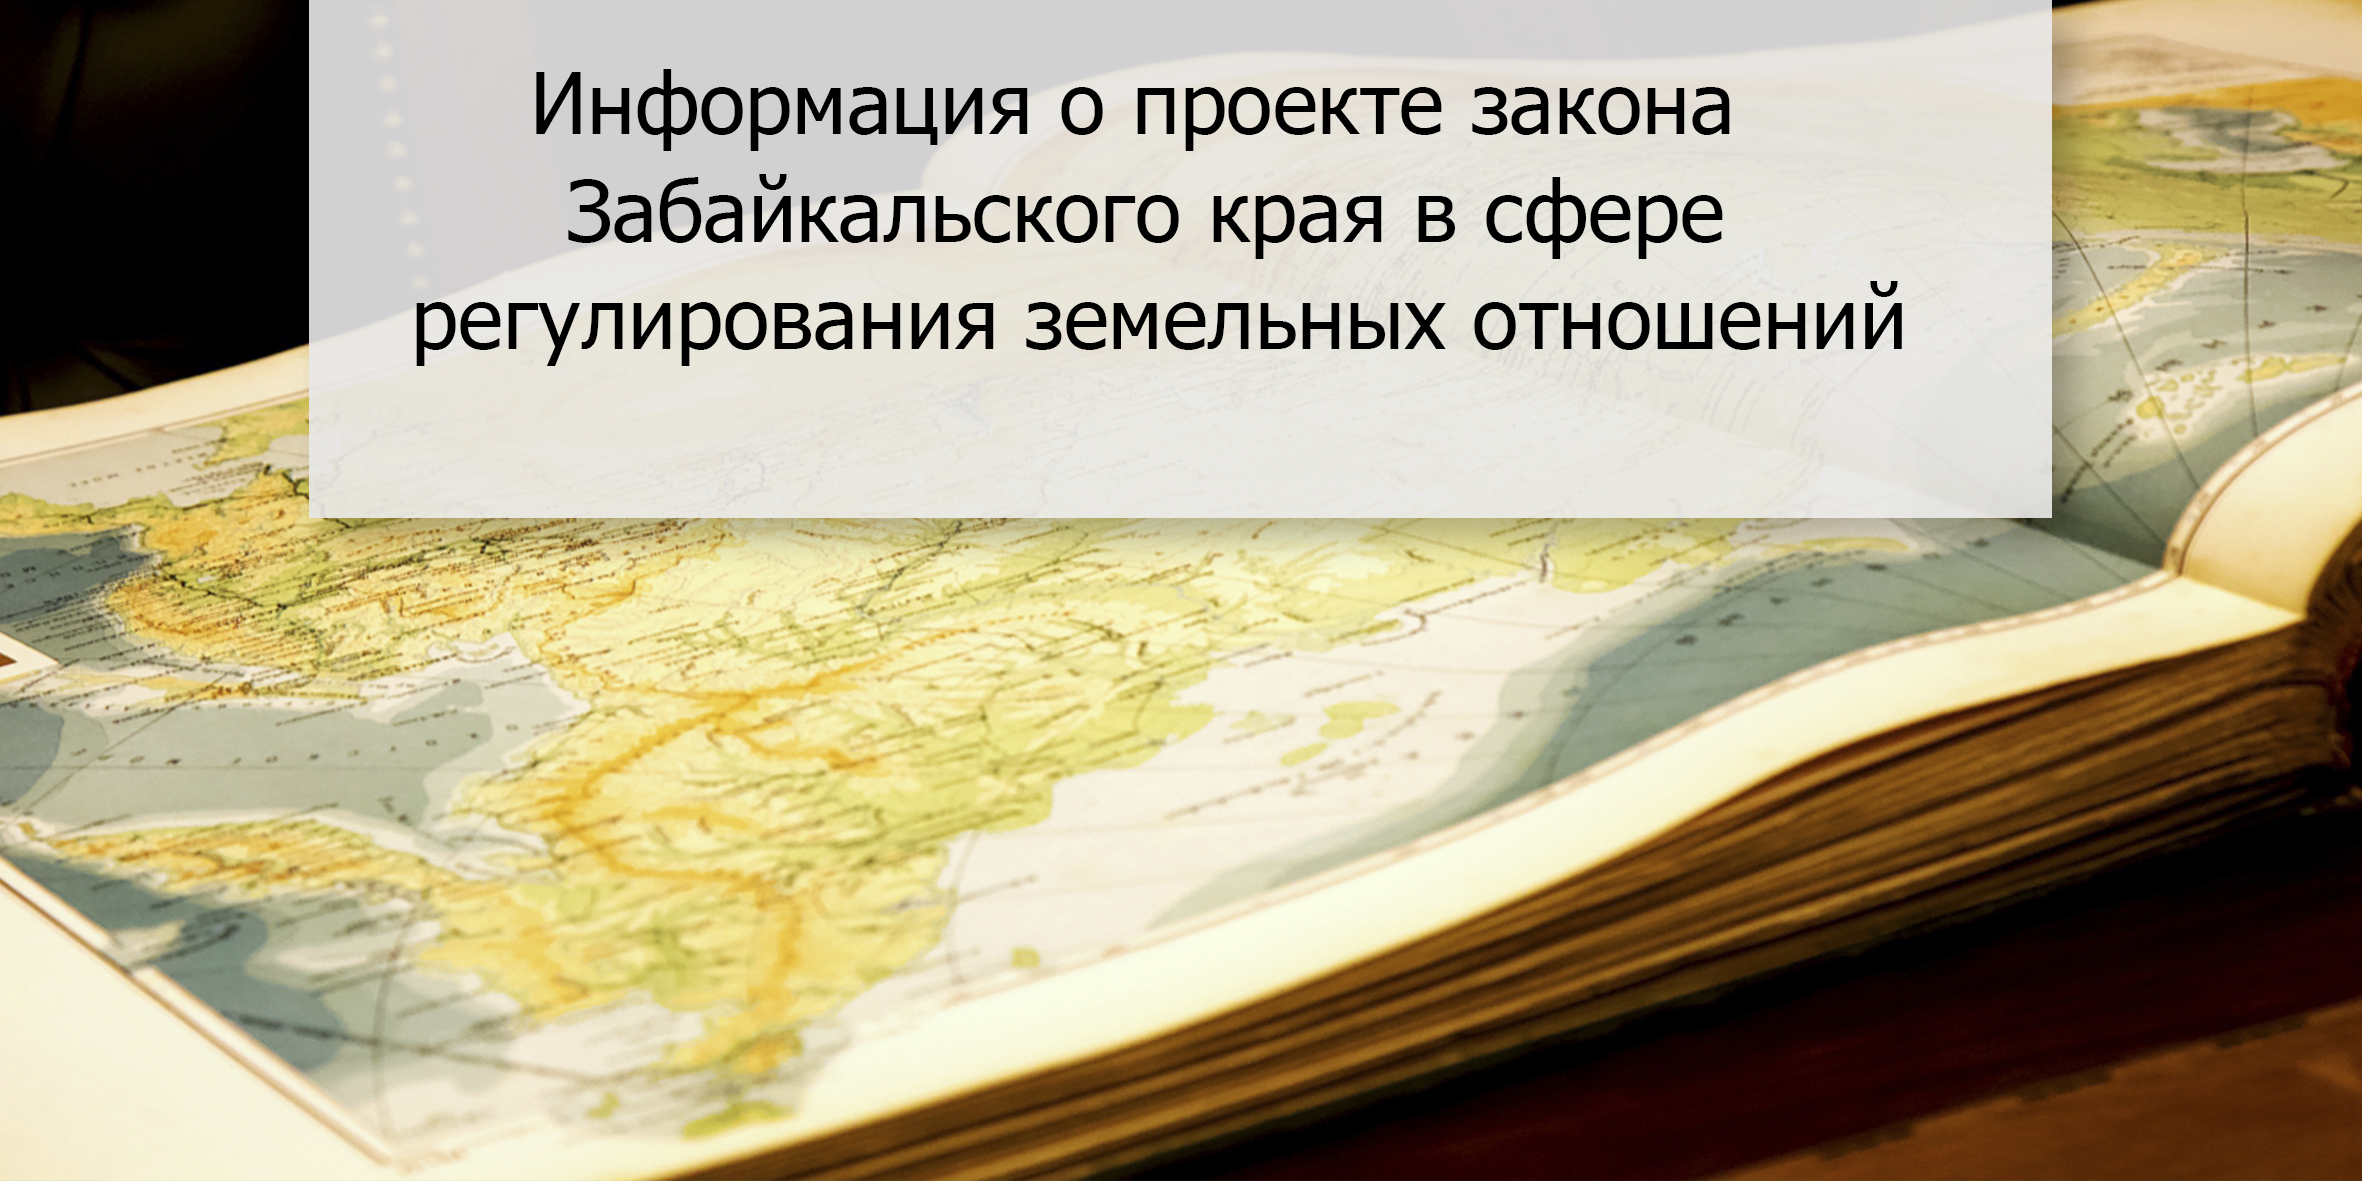 Информация о проекте закона Забайкальского края в сфере регулирования земельных отношений